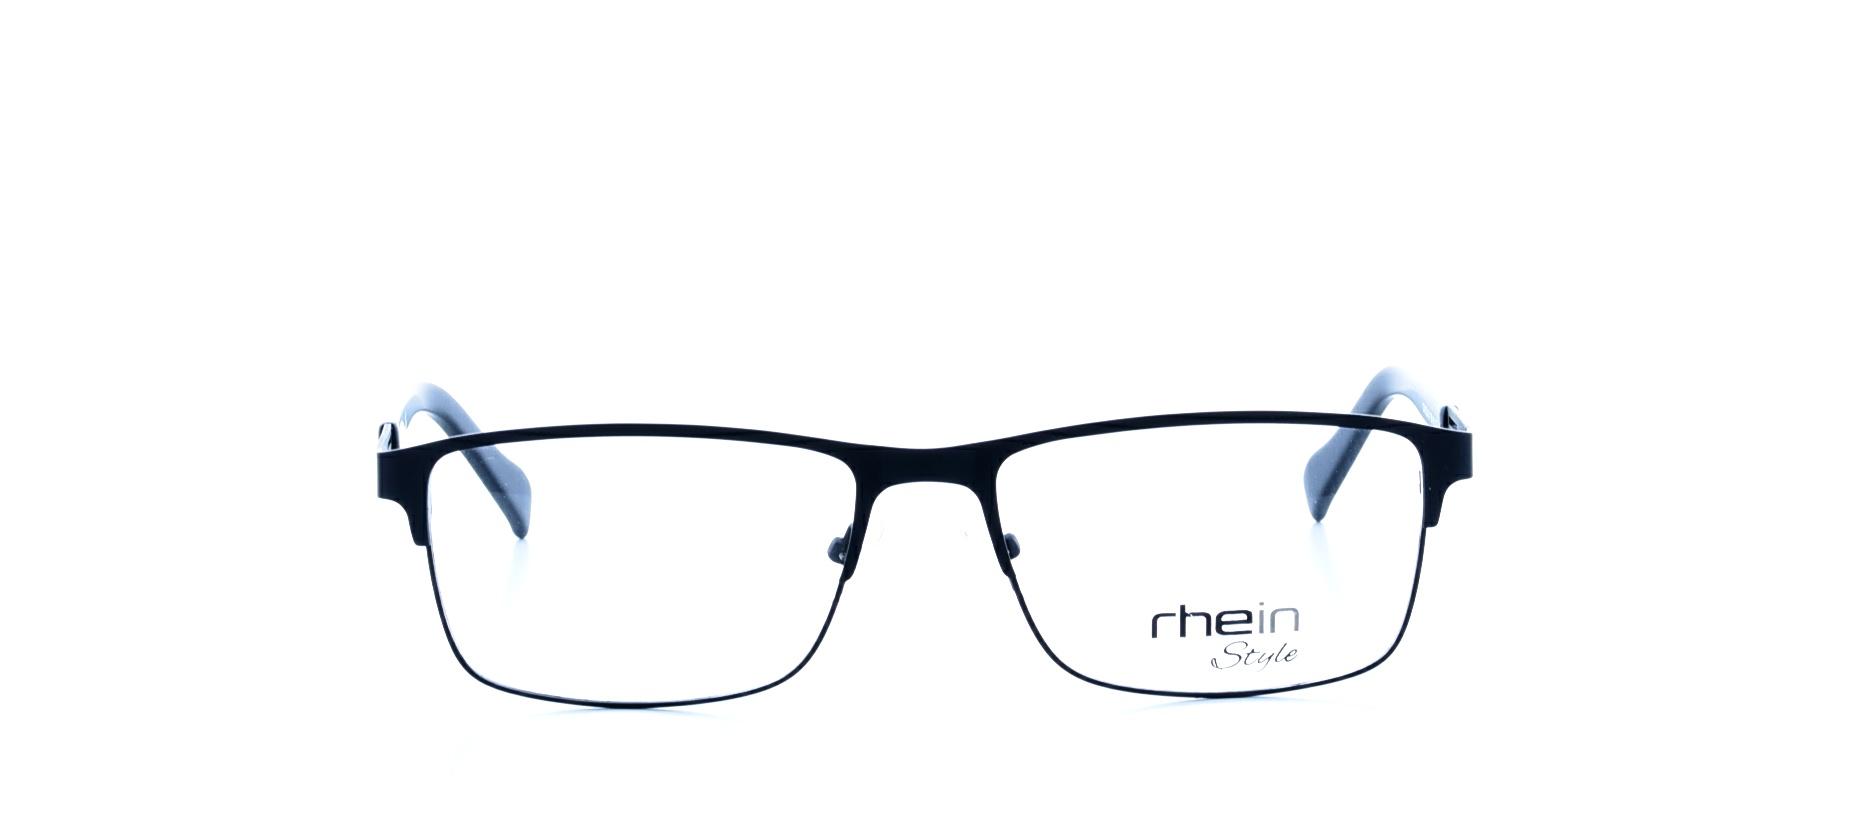 Rama ochelari vedere Rhein